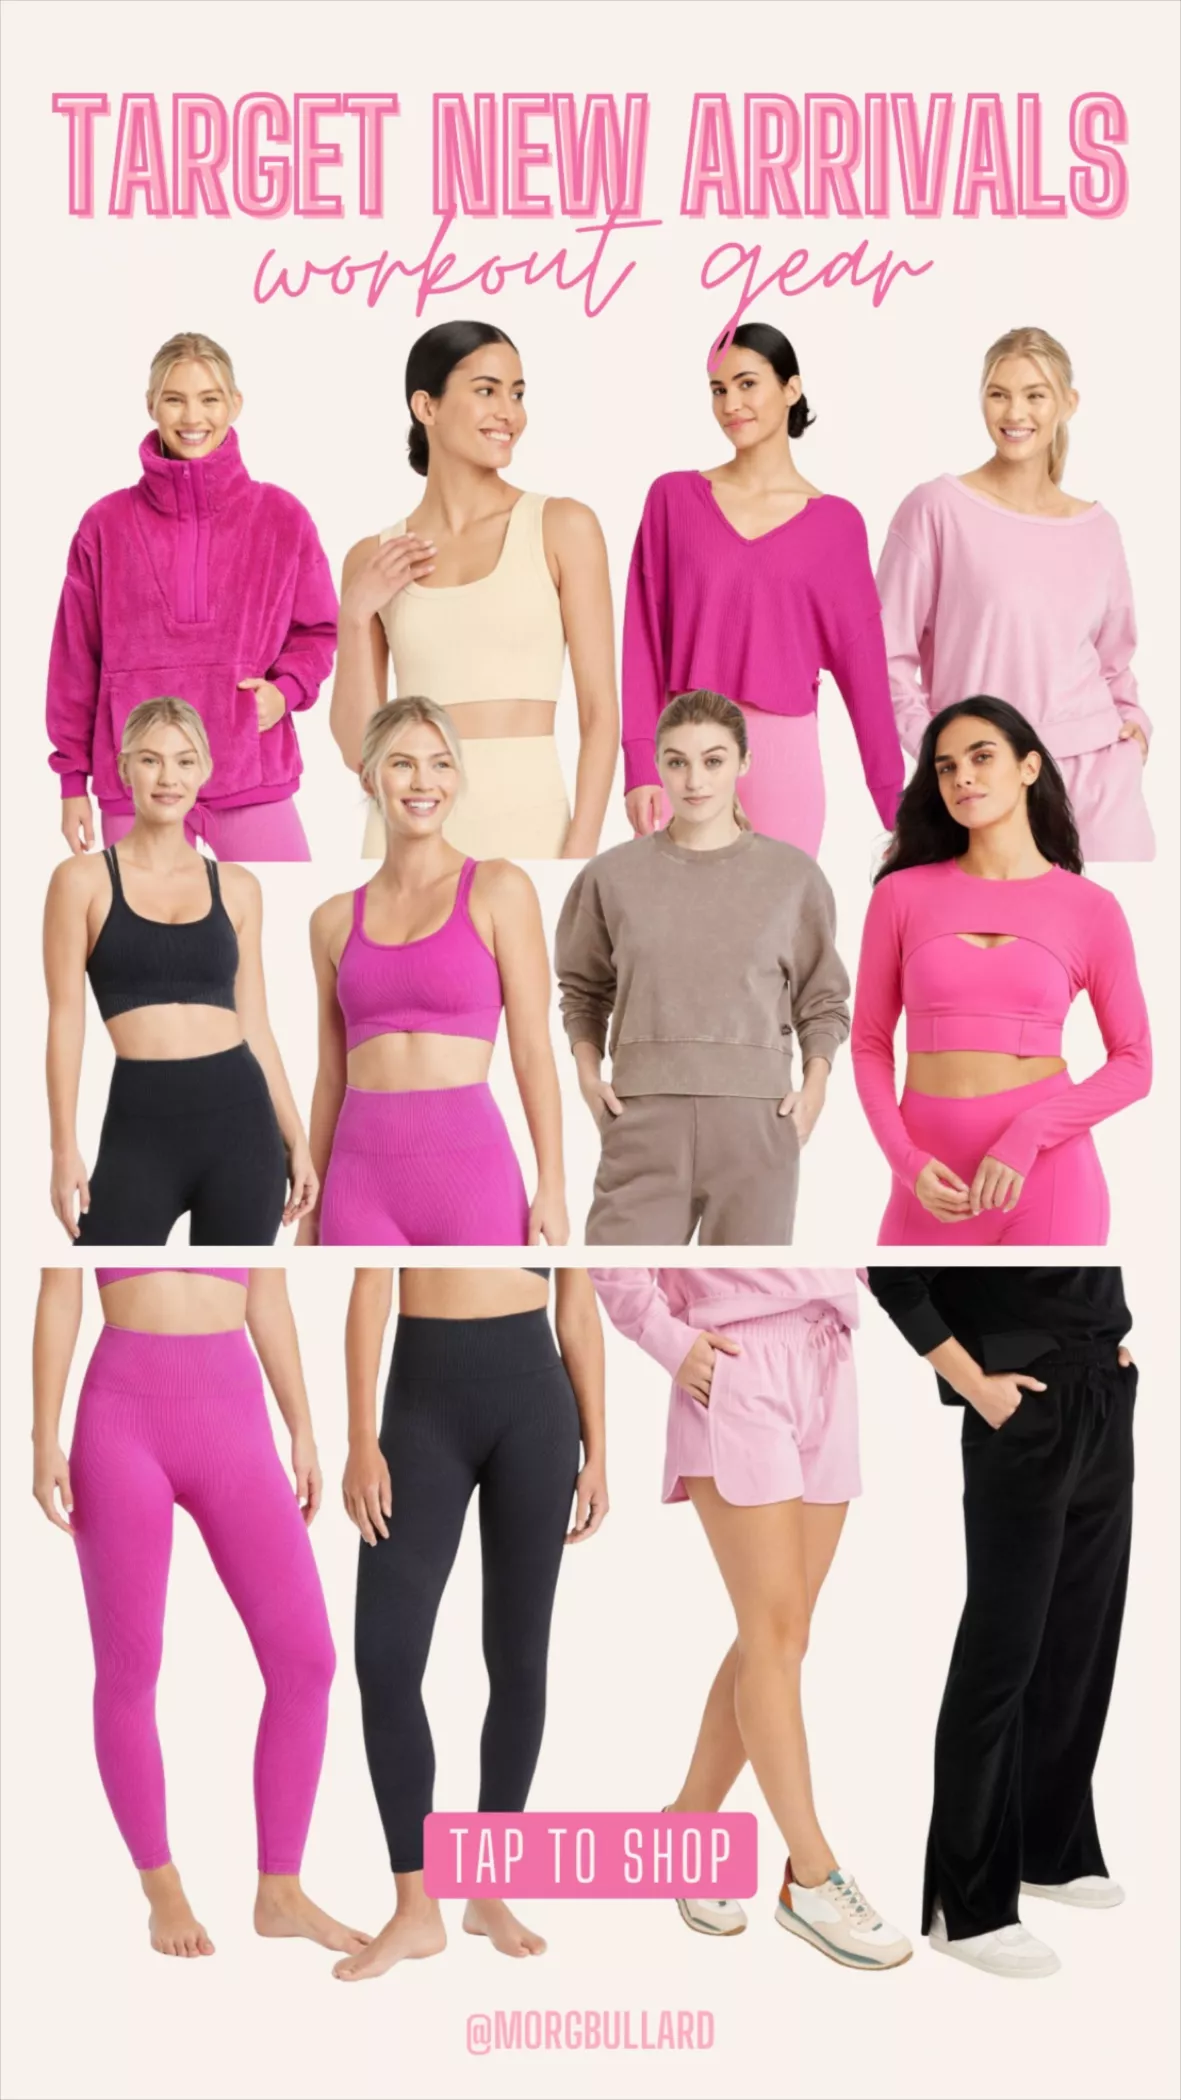 Women's High-rise Seamless Leggings - Joylab™ Pink M : Target